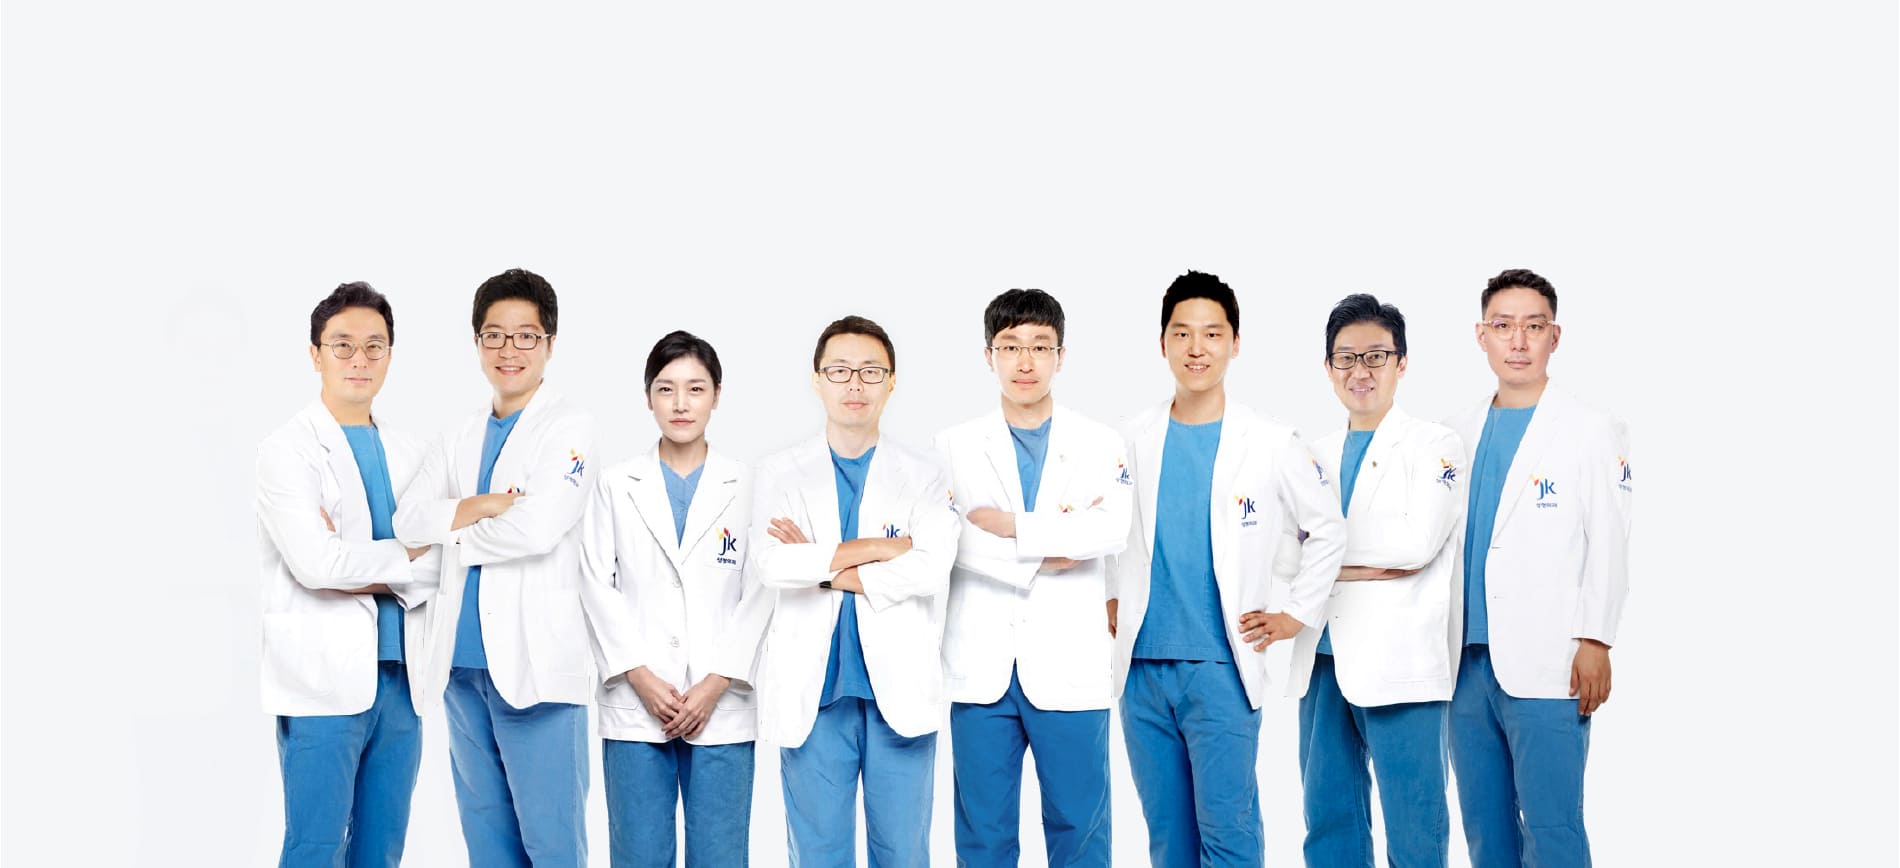 doctors